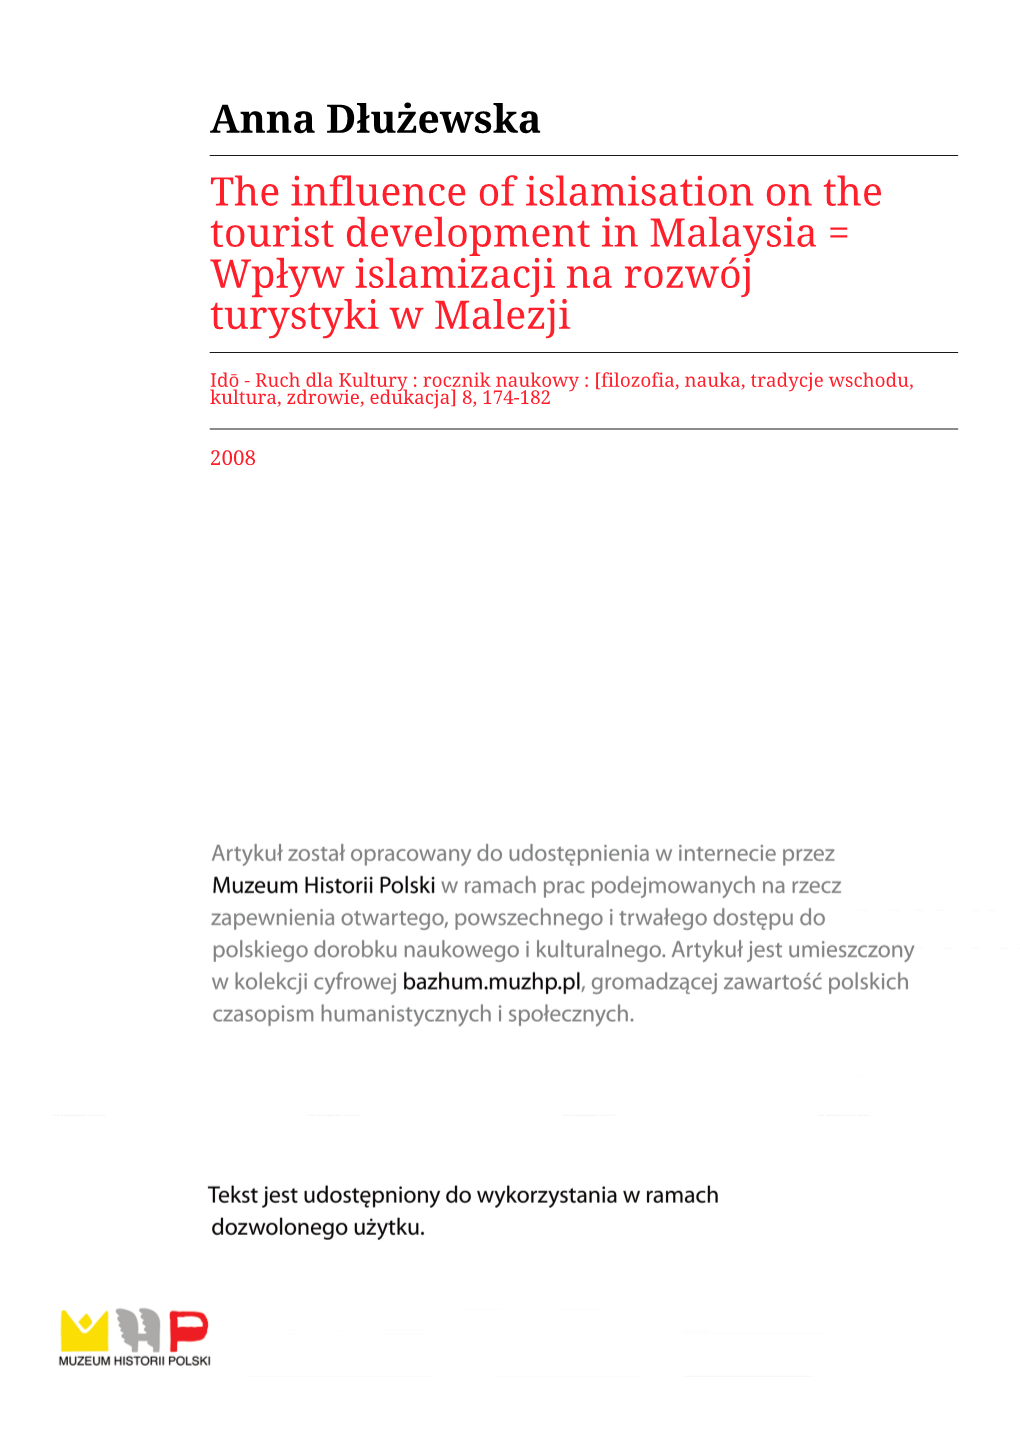 Anna Dłużewska the Influence of Islamisation on the Tourist Development in Malaysia = Wpływ Islamizacji Na Rozwój Turystyki W Malezji